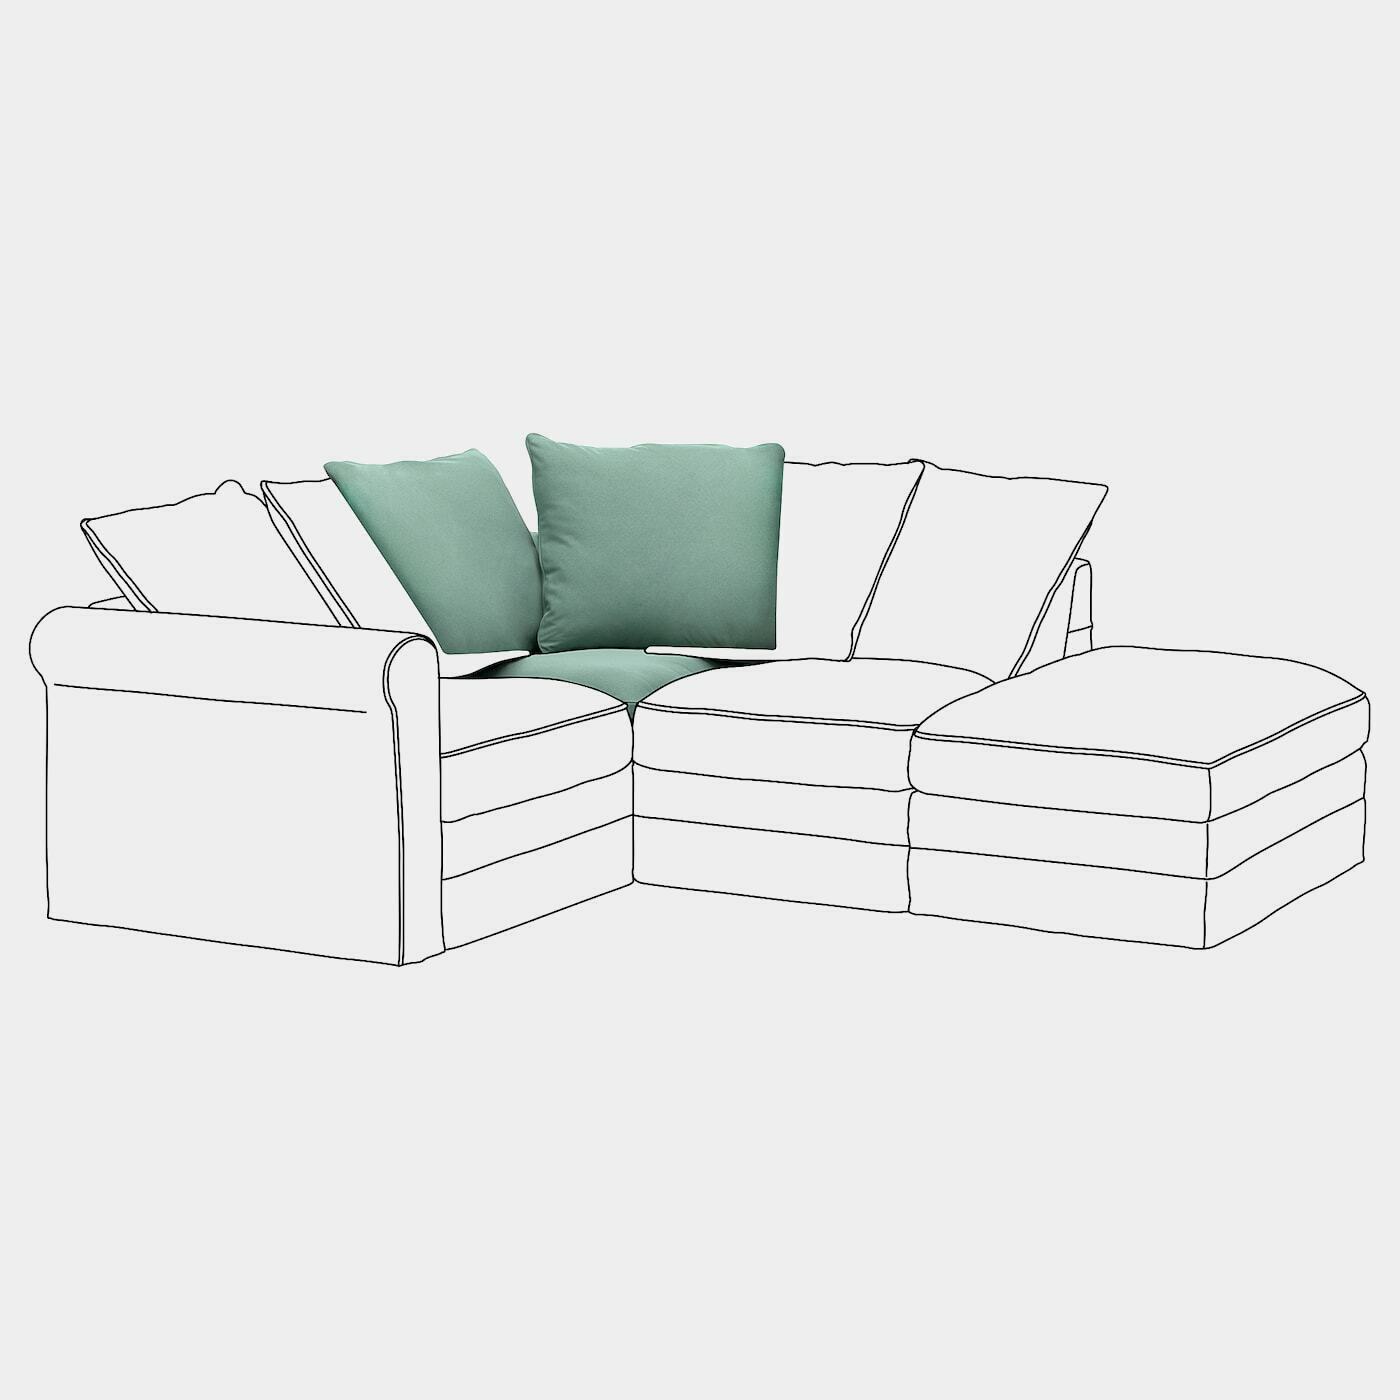 GRÖNLID Eckelement  - Wohnlandschaften & Sitzelemente - Möbel Ideen für dein Zuhause von Home Trends. Möbel Trends von Social Media Influencer für dein Skandi Zuhause.